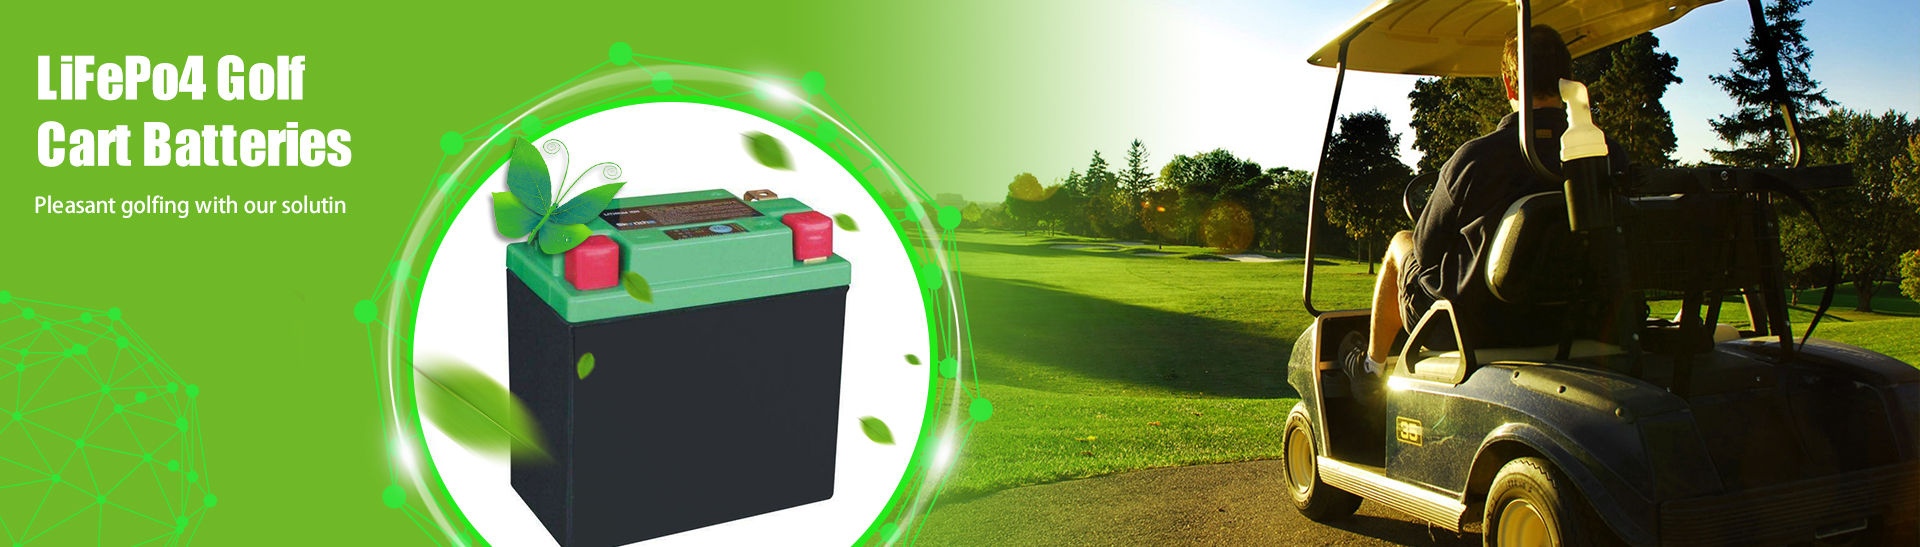 Bateria de lítio de 48 volts para carrinho de golfe